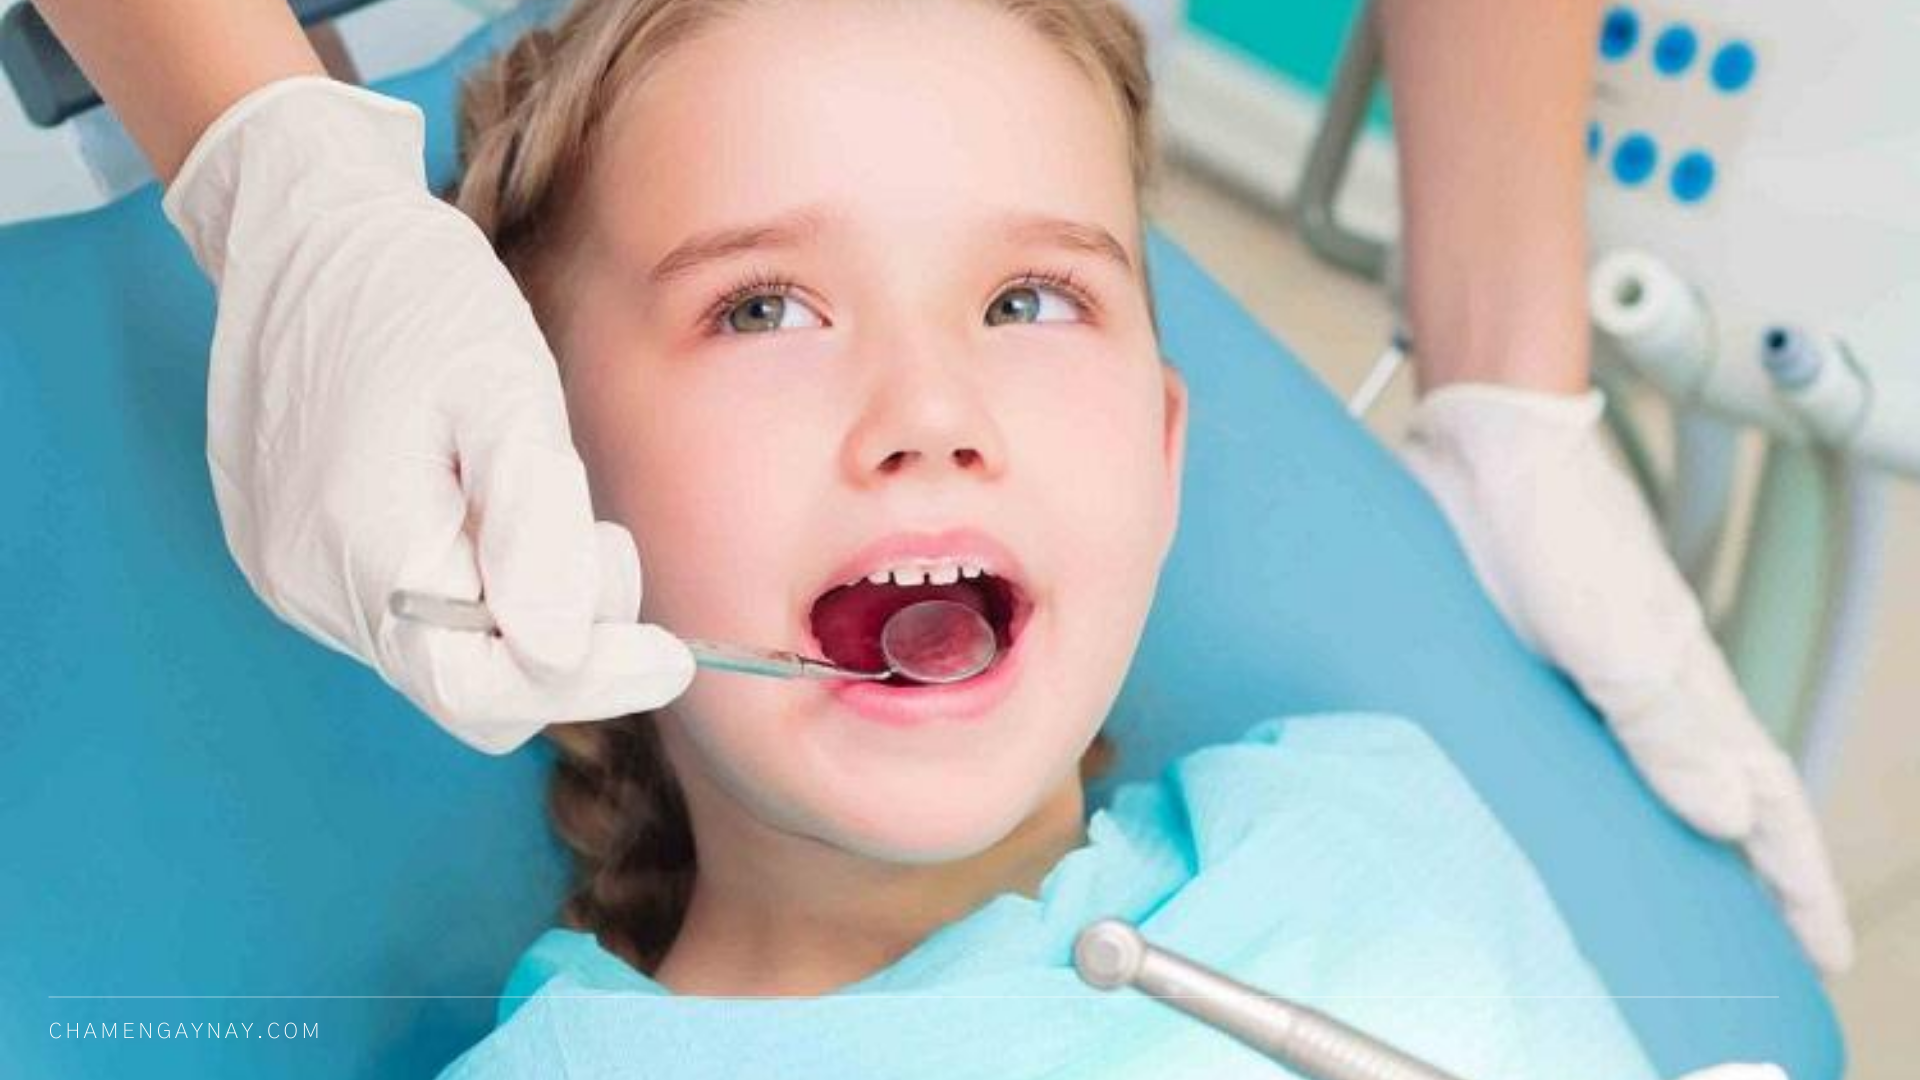 Chăm sóc răng ở trẻ